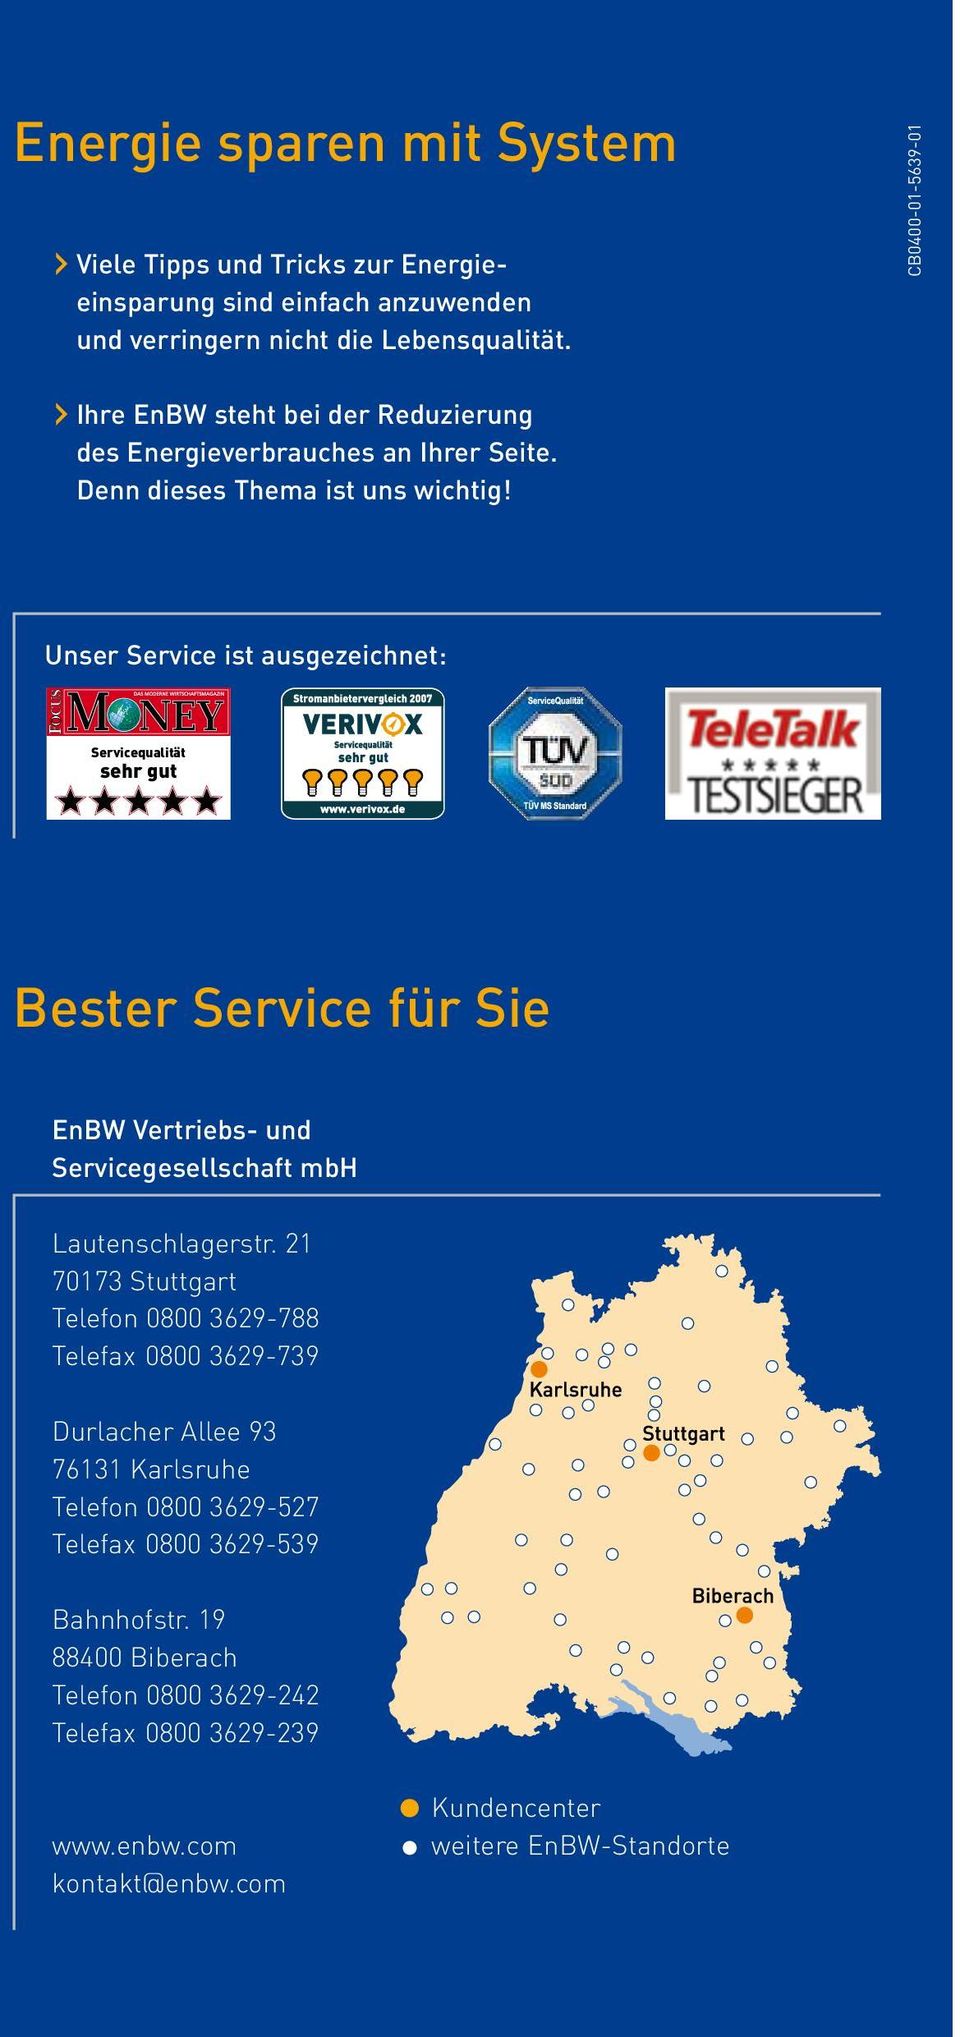 Unser Service ist ausgezeichnet: Servicequalität sehr gut Servicequalität sehr gut Bester Service für Sie EnBW Vertriebs- und Servicegesellschaft mbh Lautenschlagerstr.